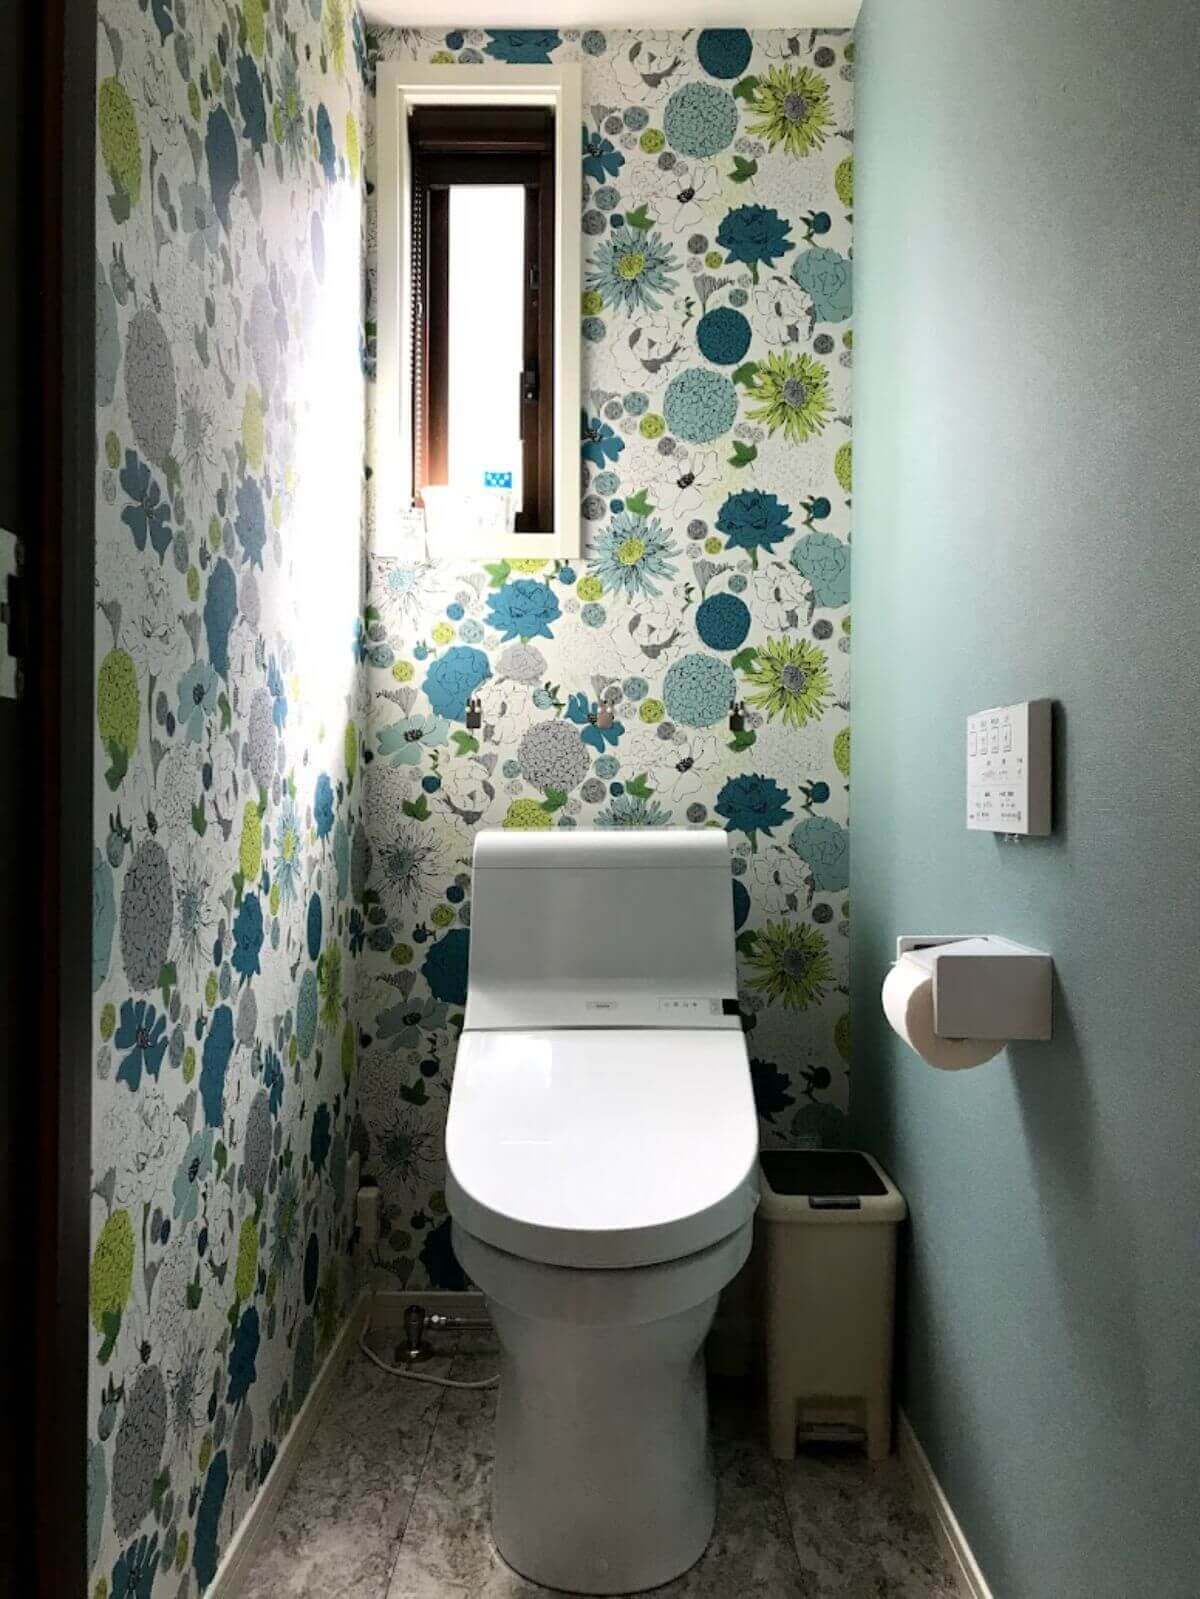 緑色の壁紙と窓のあるトイレ室内